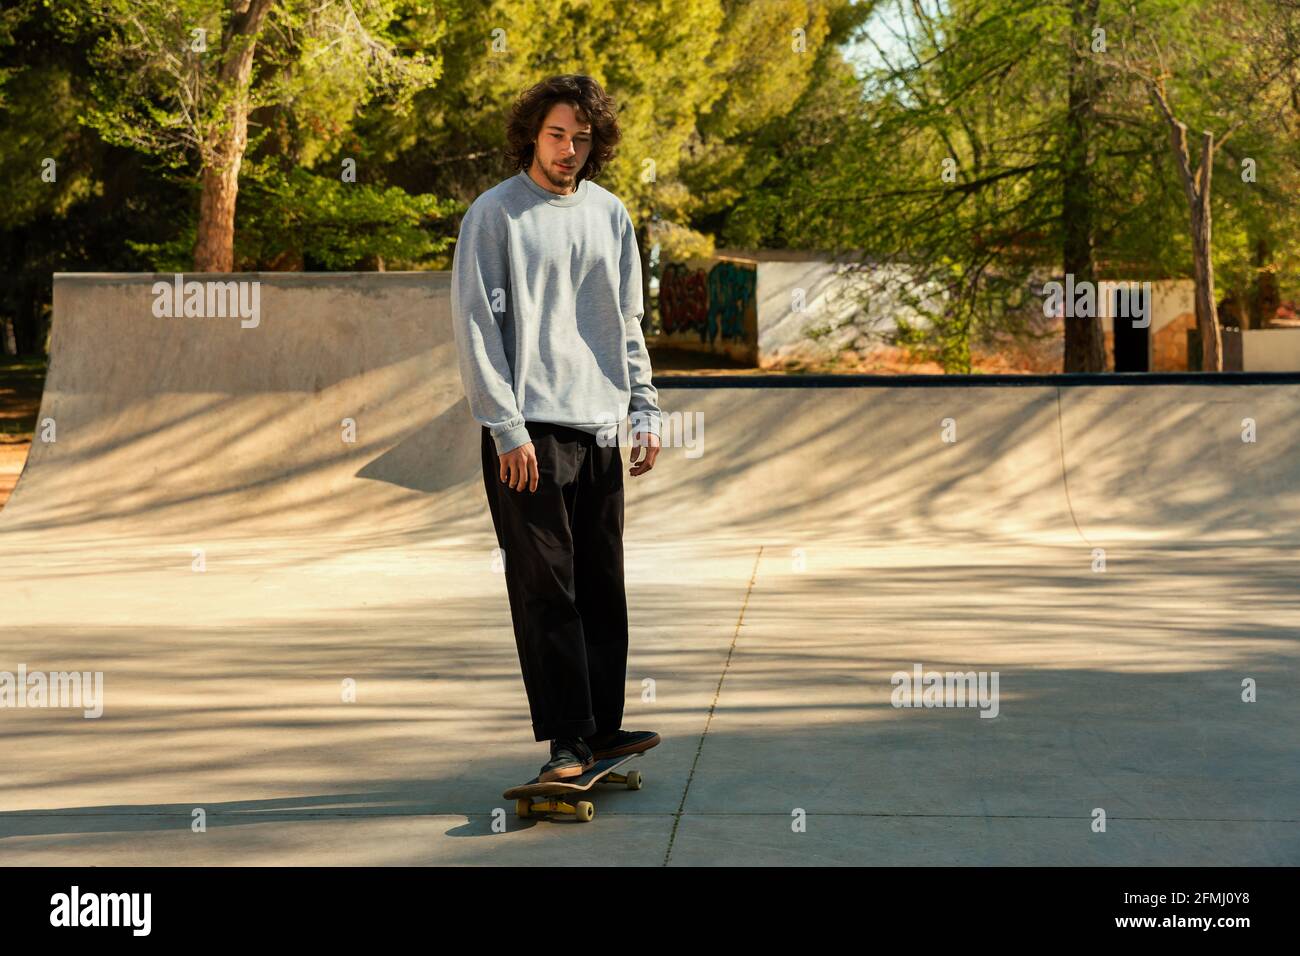 Junger Mann auf einem Skateboard im städtischen Skatepark Stockfoto